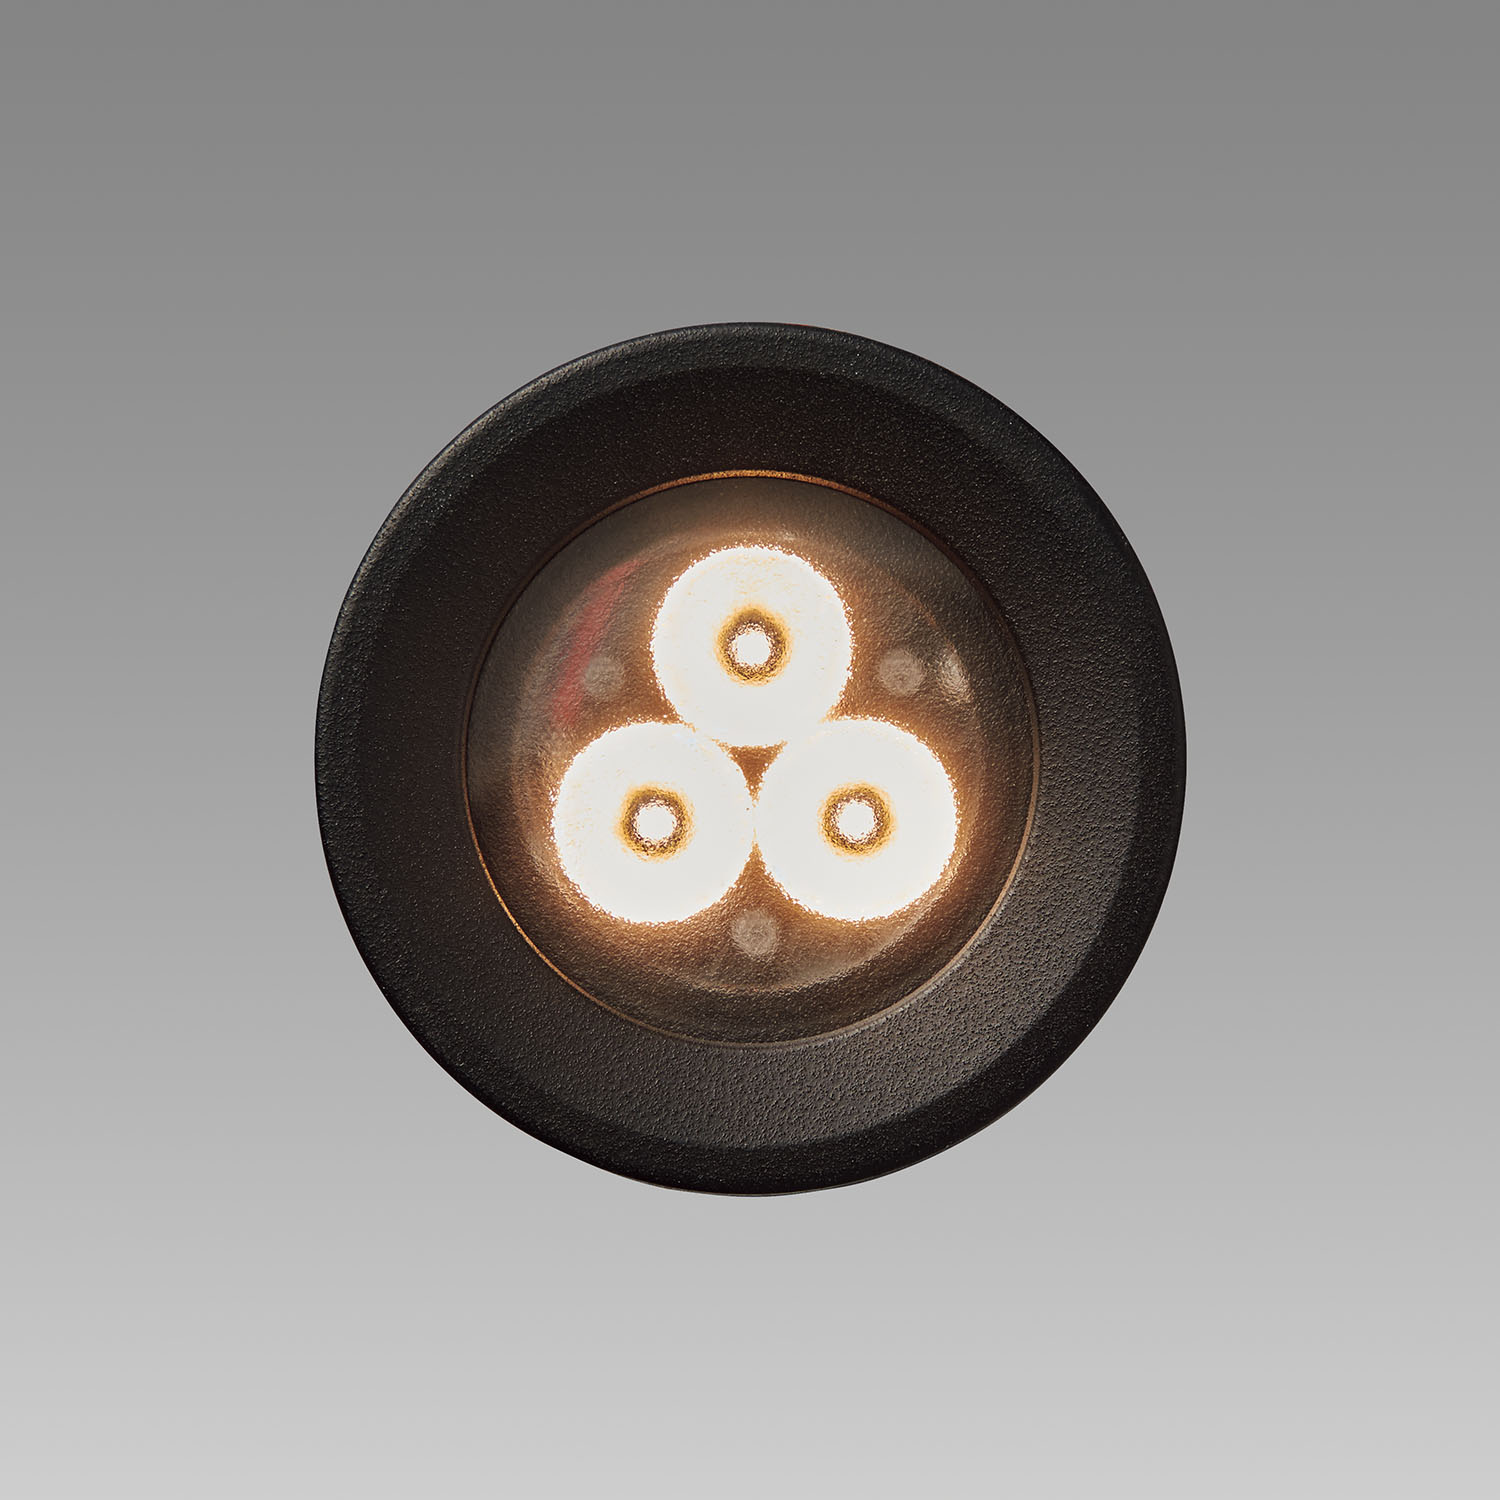 山田照明 山田照明 Compact Spot Neo（コンパクト・スポット・ネオ） 屋外用スポットライト 黒色 LED 電球色 調光 64度 AD -3147-L